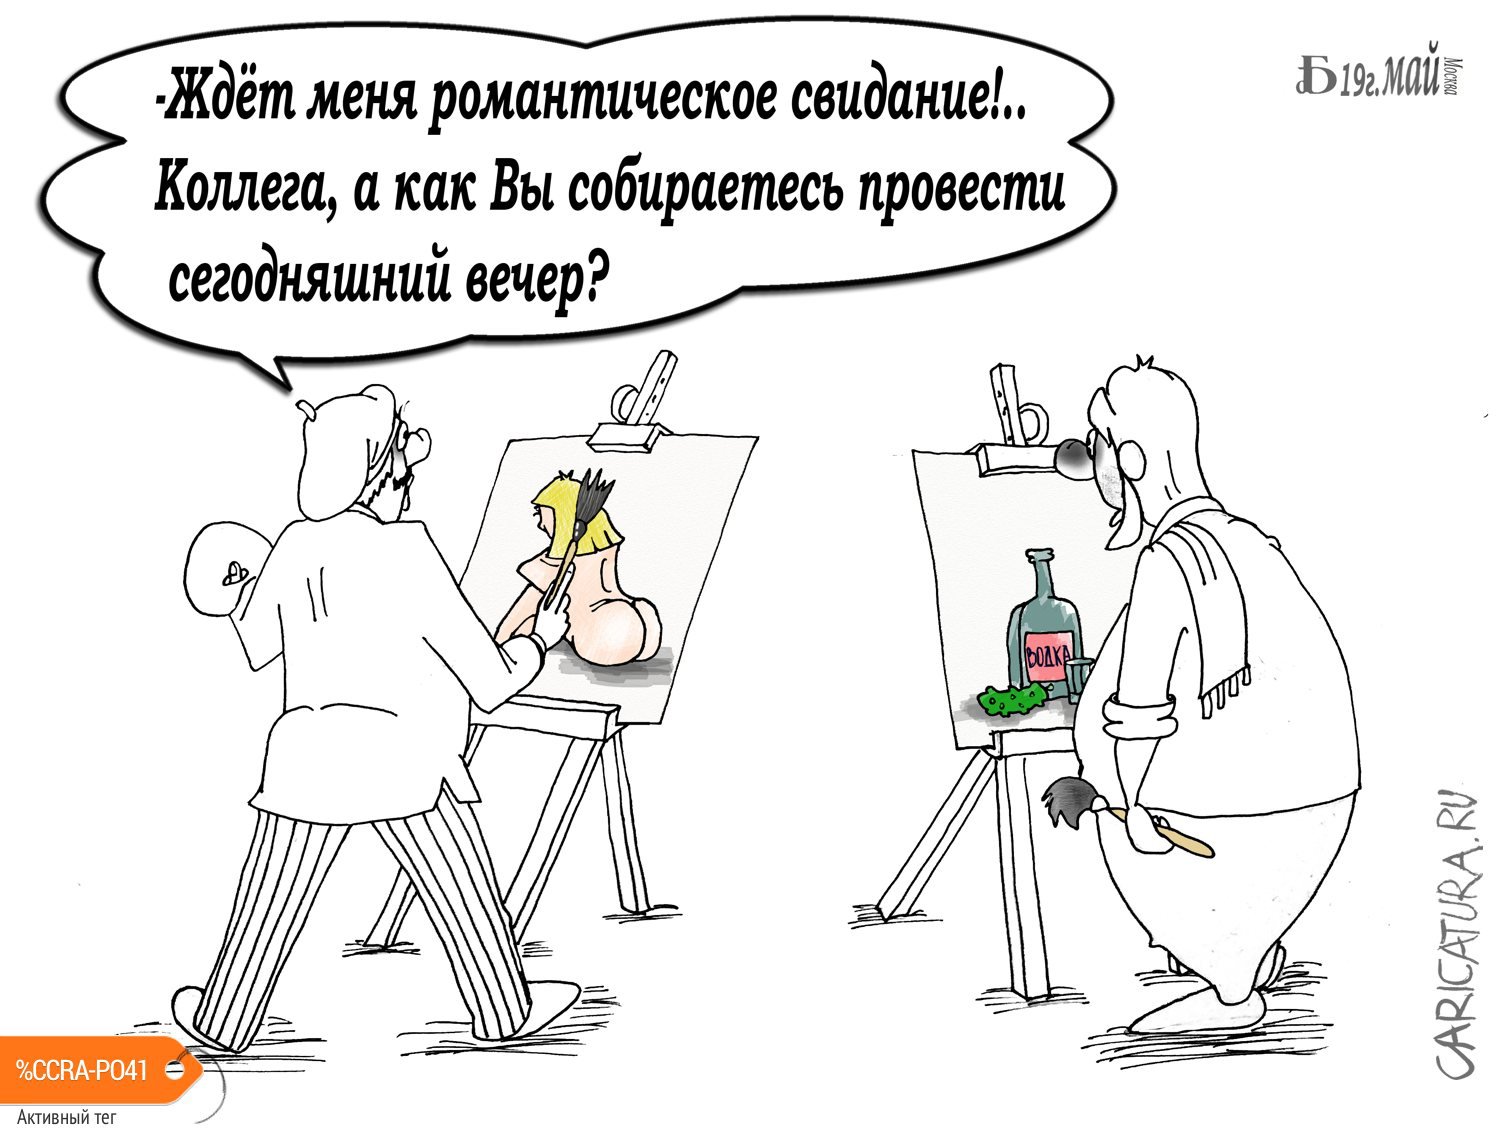 Карикатура "Про весеннее игривое настроение...", Борис Демин